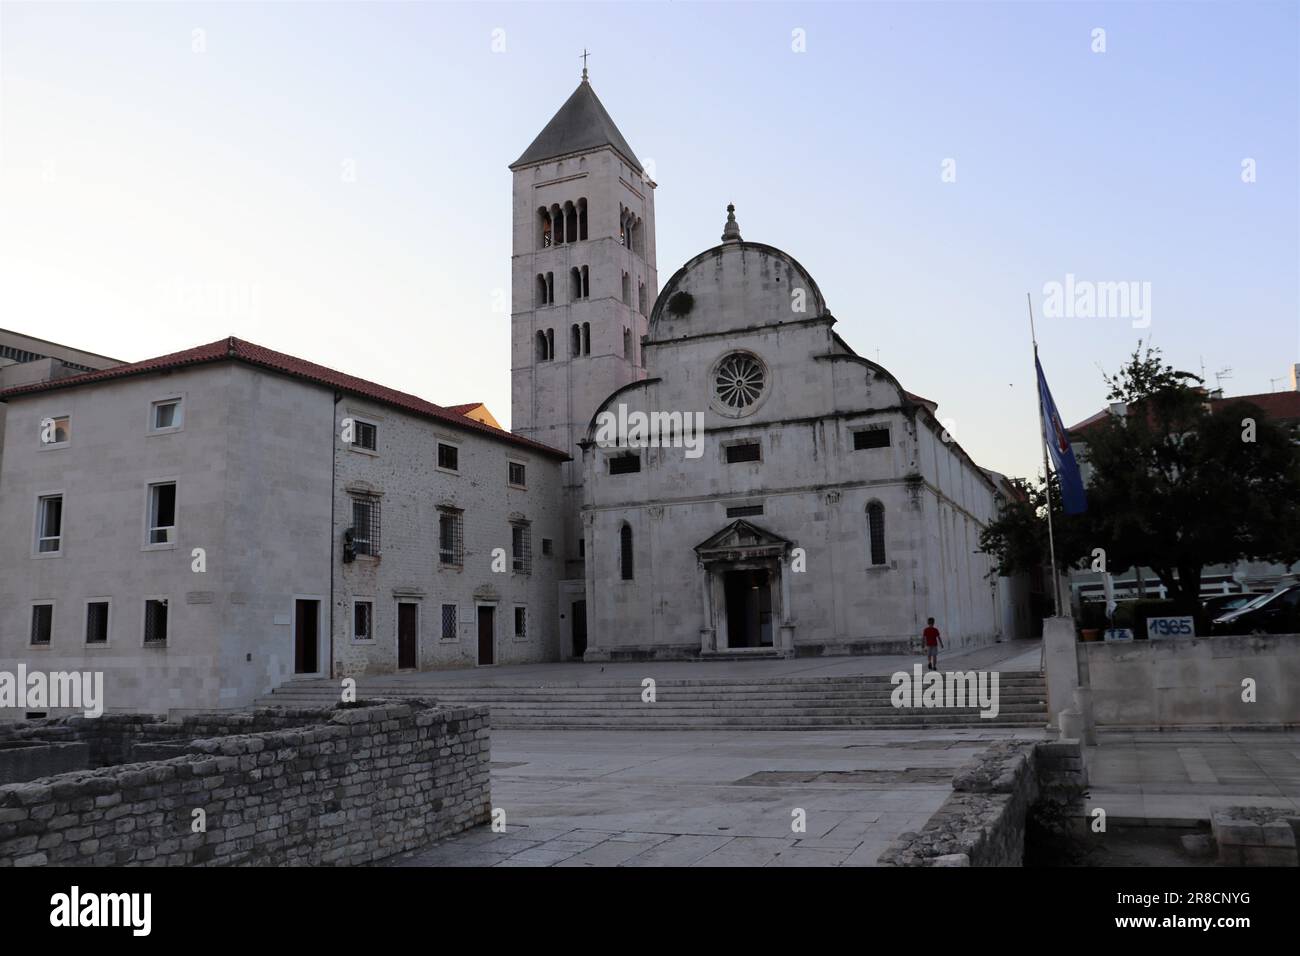 Die Stadt Zadar und historische Denkmäler mit Kirchen und einer Kathedrale, die noch heute genutzt werden. Die Fotos zeigen auch den Küstenabschnitt der Stadt. Stockfoto